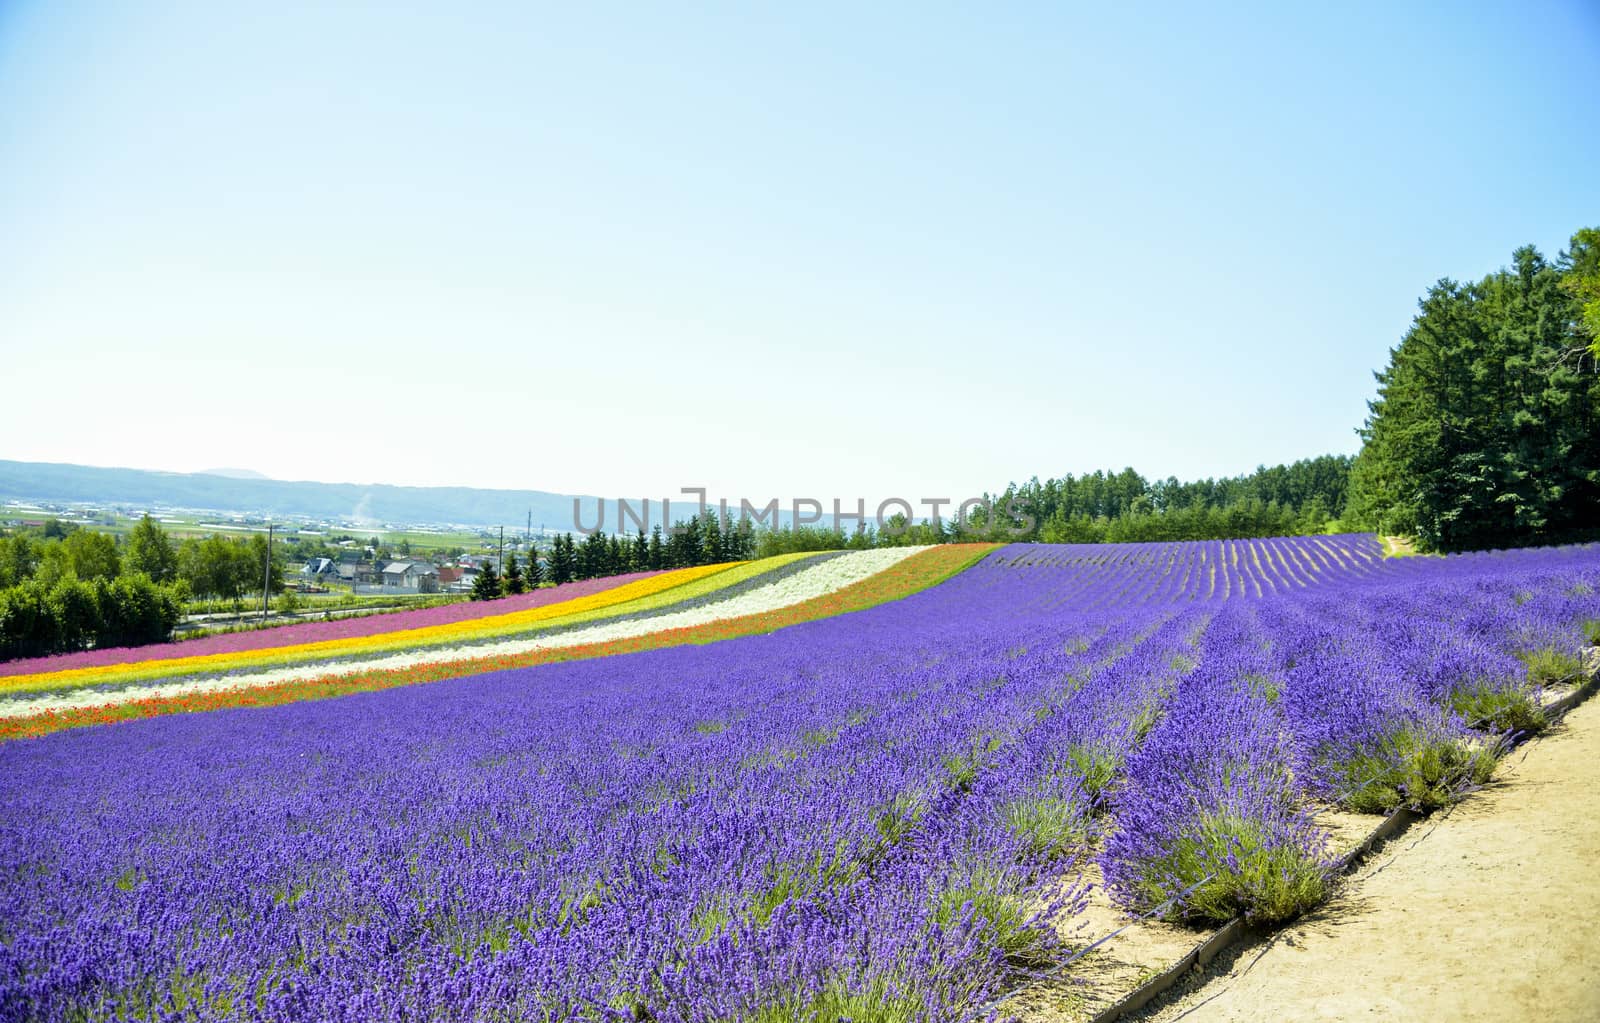 Lavender field in the row2 by gjeerawut